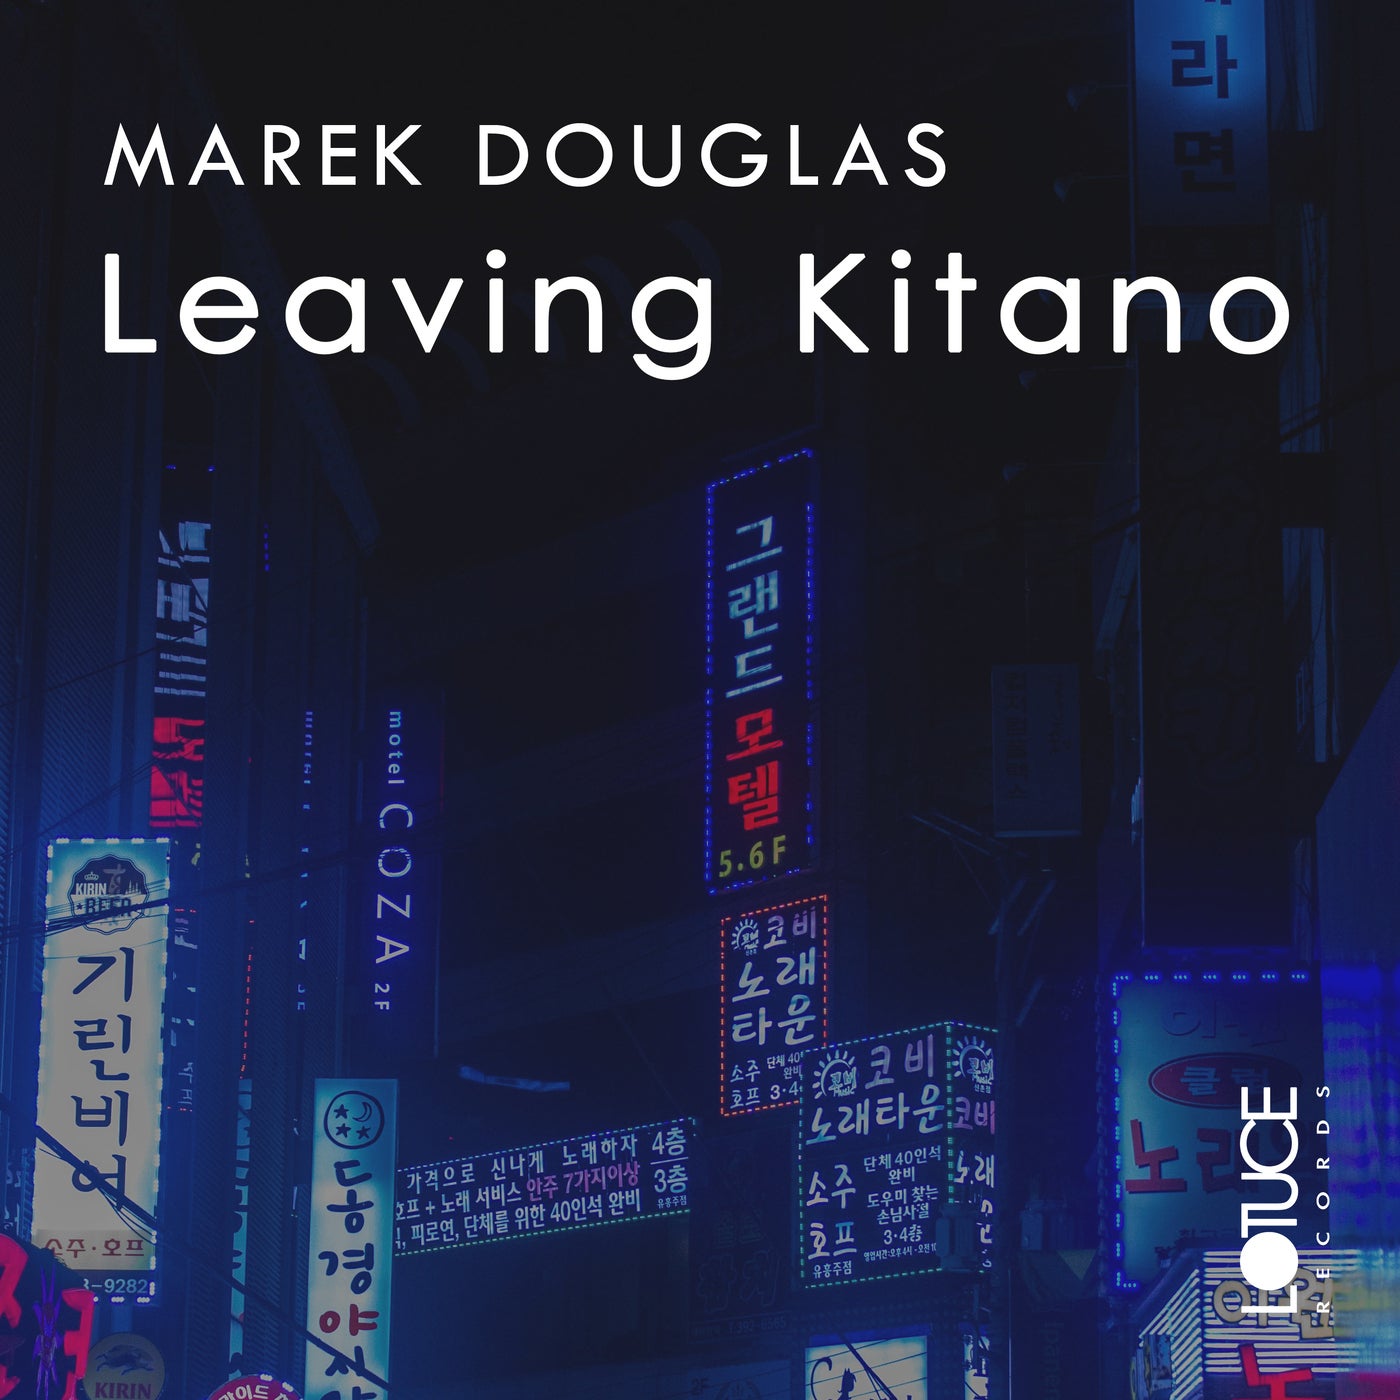 Leaving Kitano